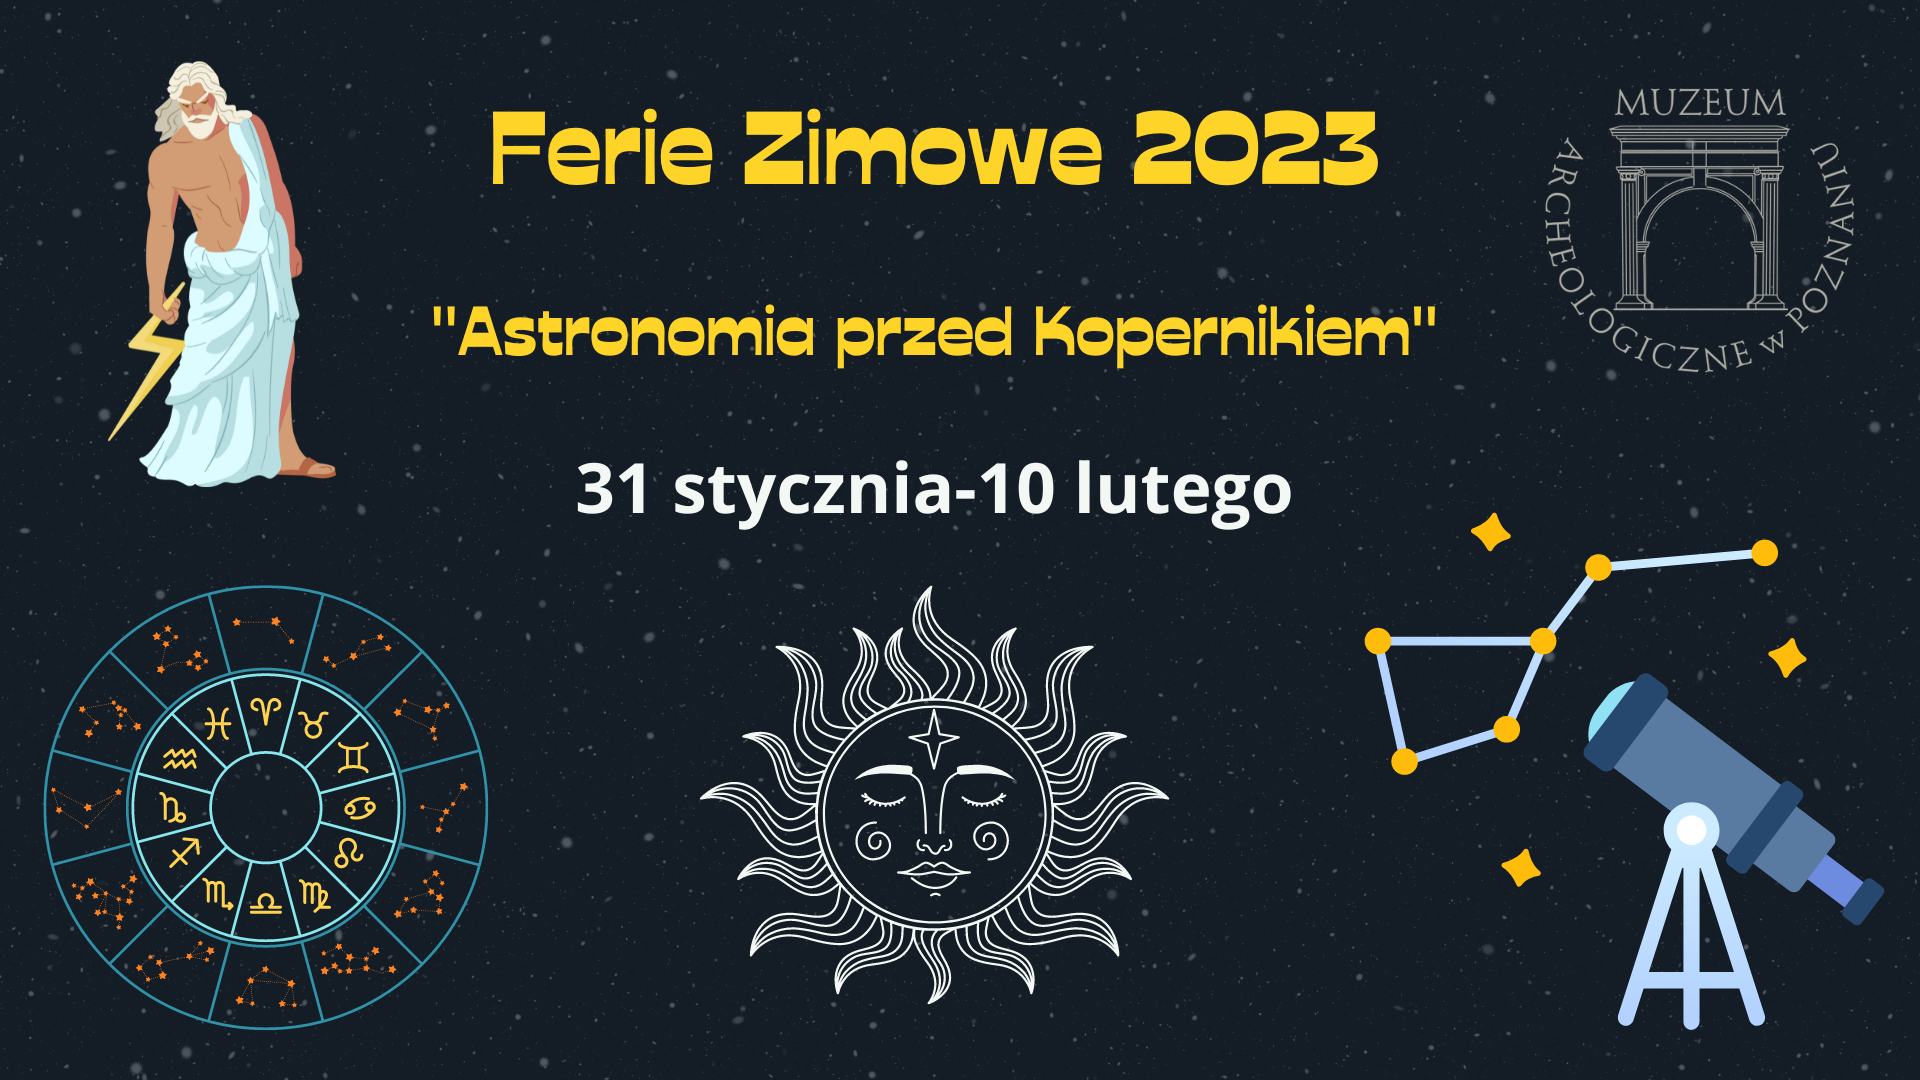 Ferie zimowe 2023 w Muzeum Archeologicznym w Poznaniu  „Astronomia przed Kopernikiem” 31.01- 10.02